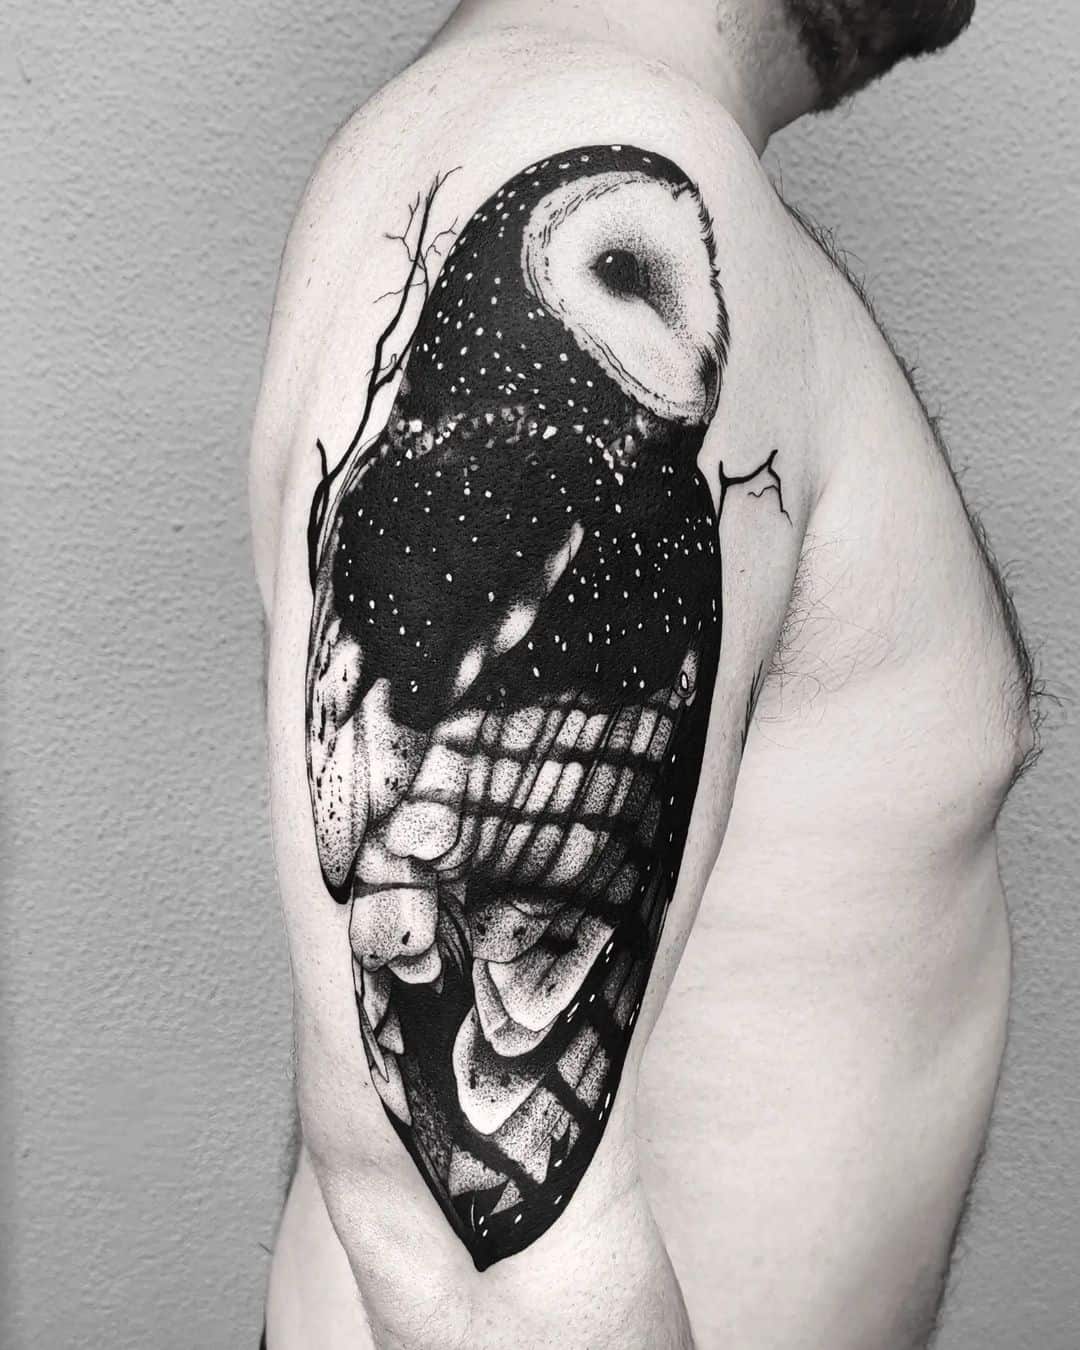 Barn owl tattoo by elnigrotat2